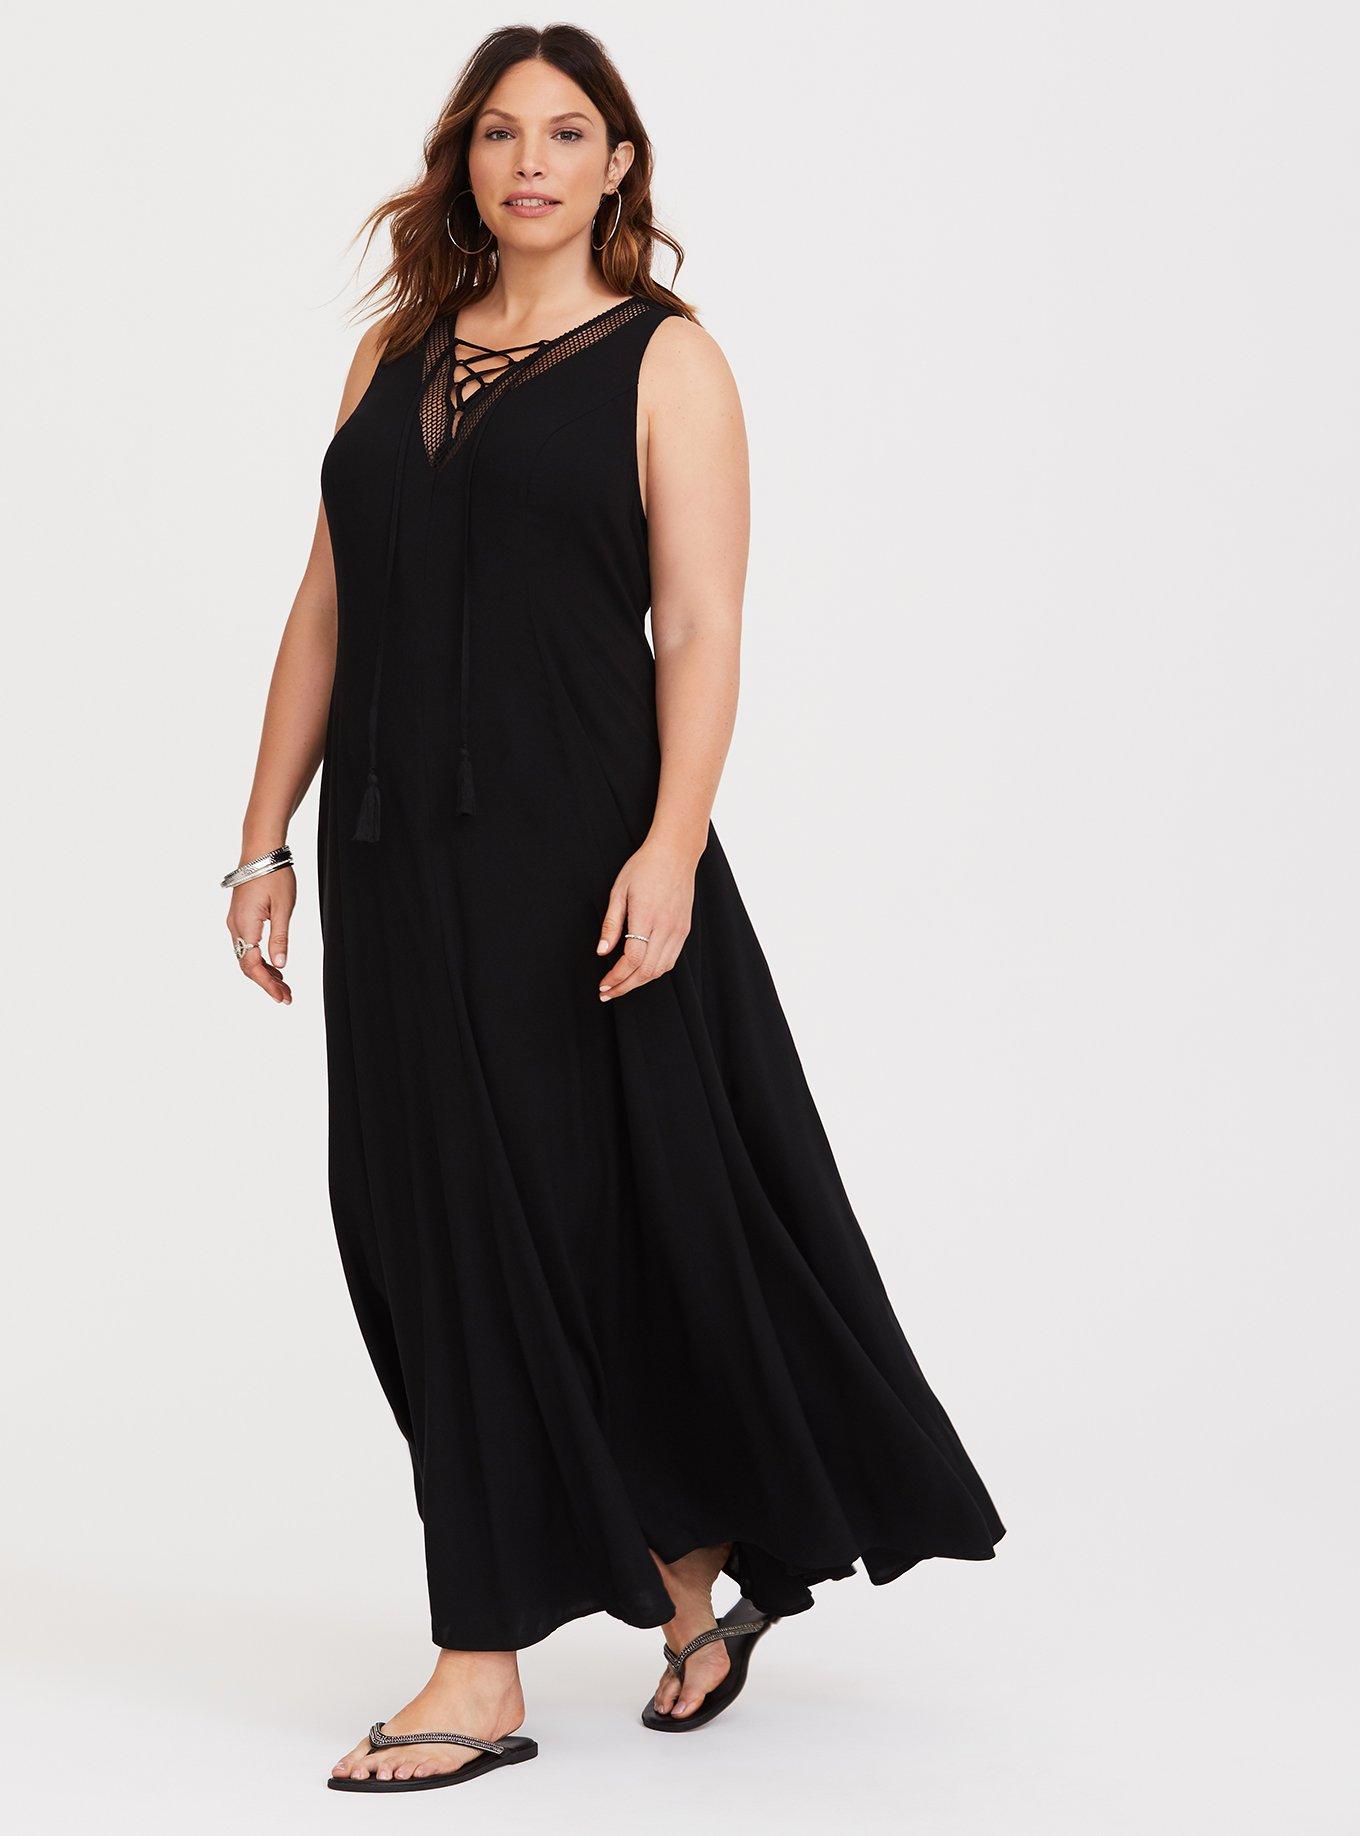 Plus Size - Black Lace-Up Challis Trapeze Maxi Dress - Torrid